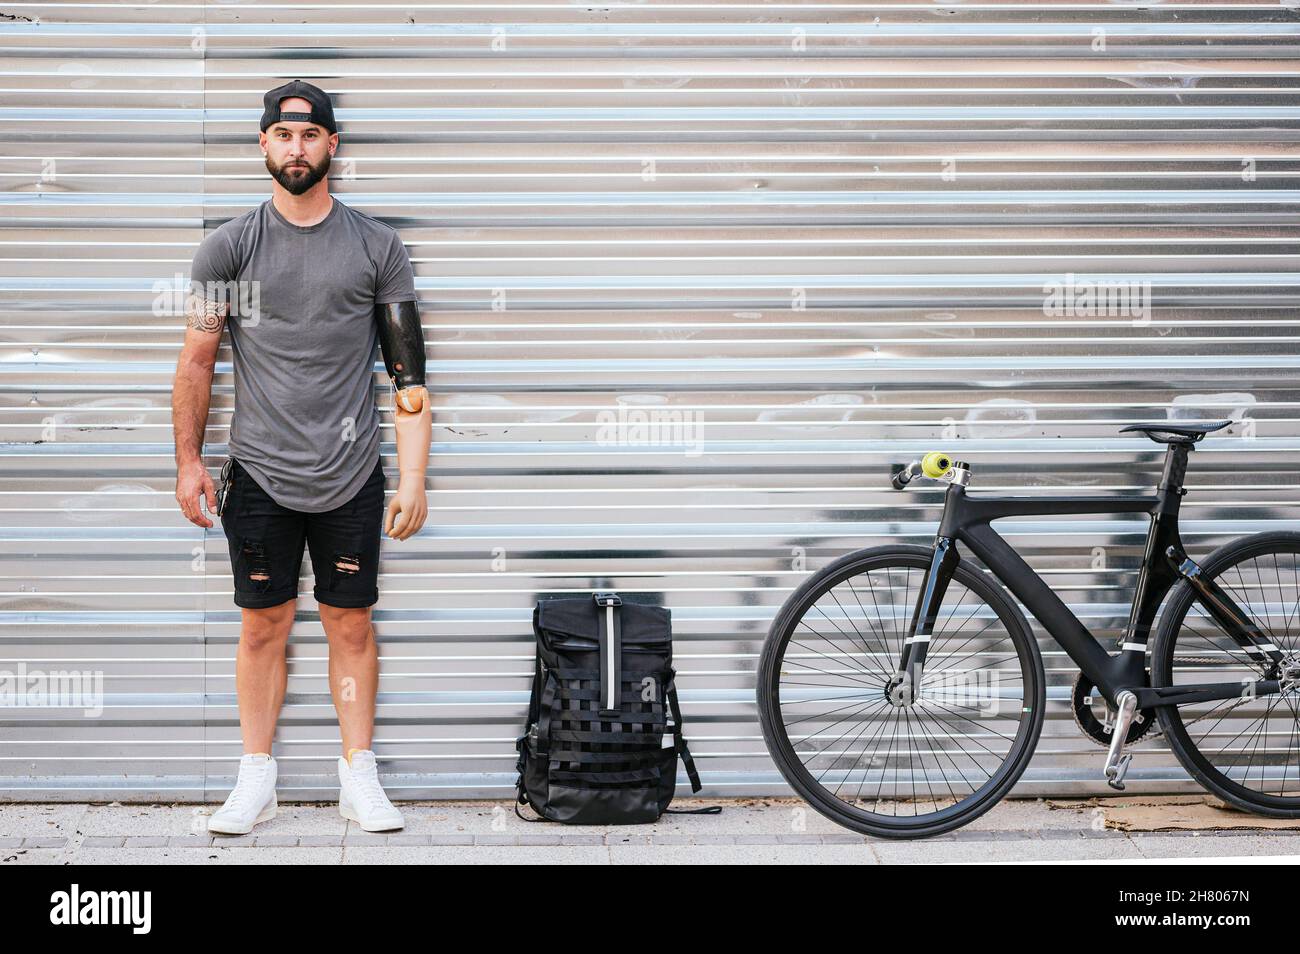 Culotte taille basse homme confiante avec bras artificiel à proximité d'un sac à dos et d'un vélo en ville et regardant l'appareil photo contre un mur en métal Banque D'Images